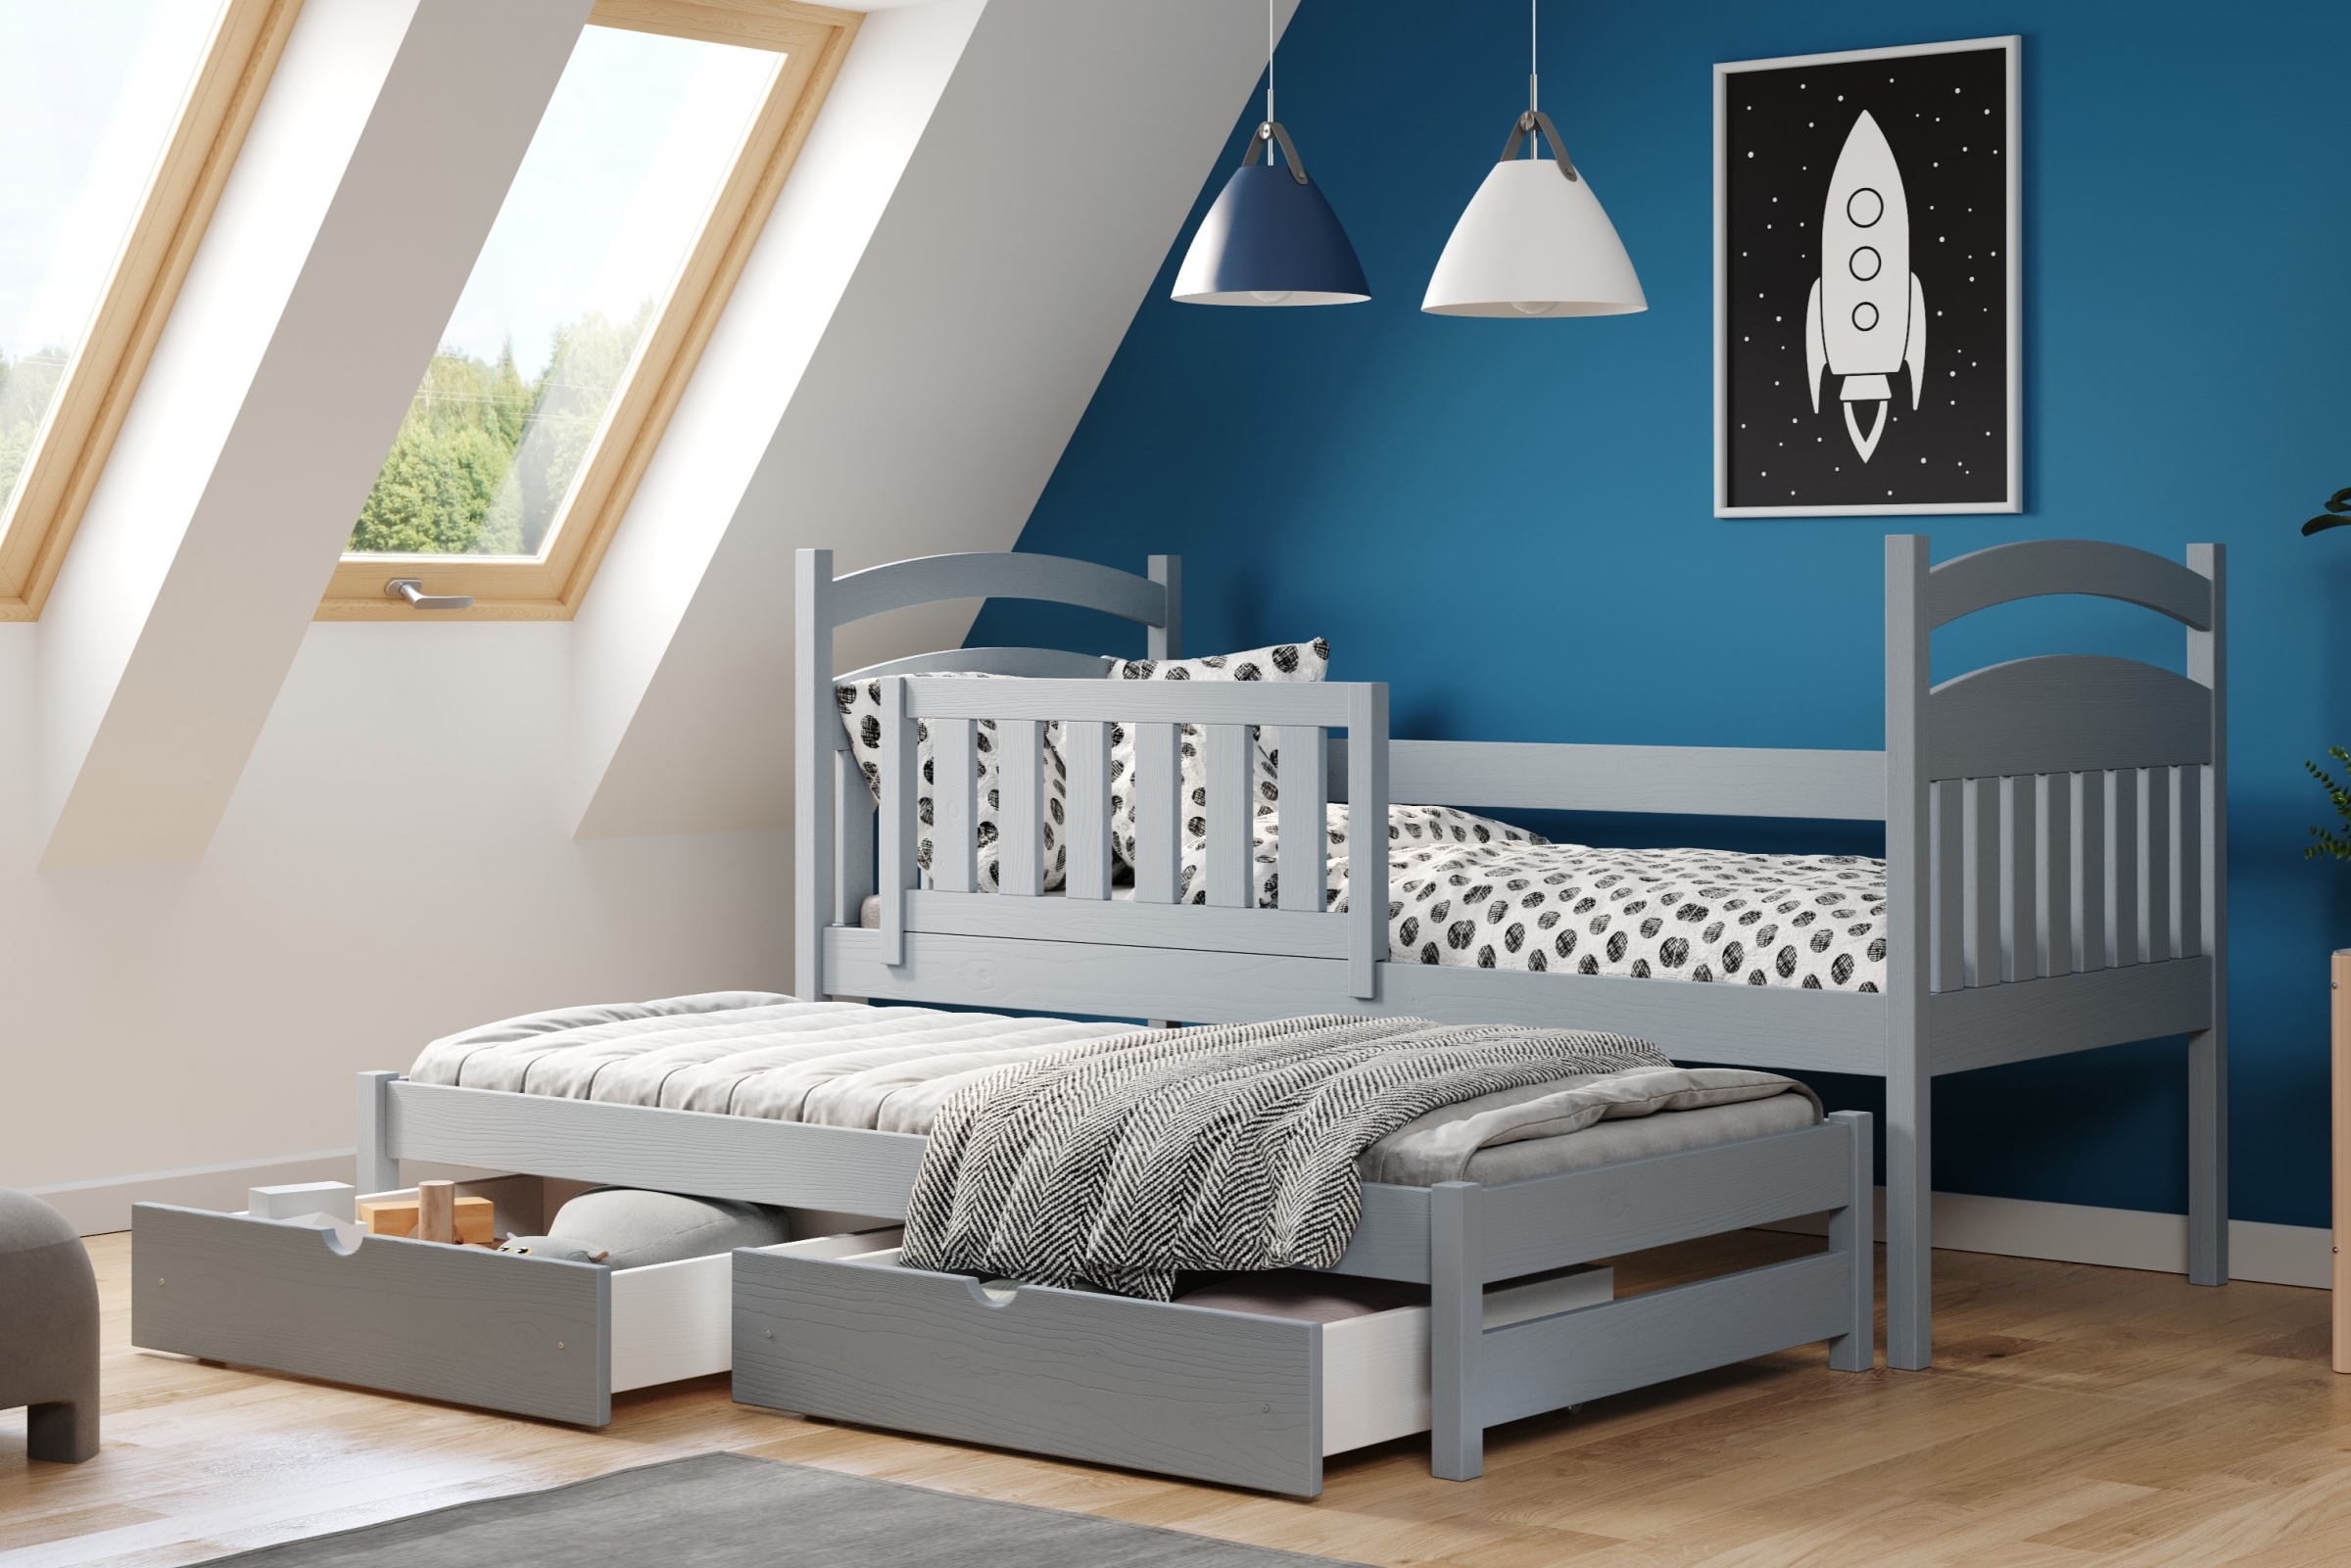 Detská posteľ prízemná výsuvna Amely - Farba šedý, rozmer 80x180 Posteľ dzieciece prízemná s výsuvným lôžkom Amely - Farba šedý - vizualizácia